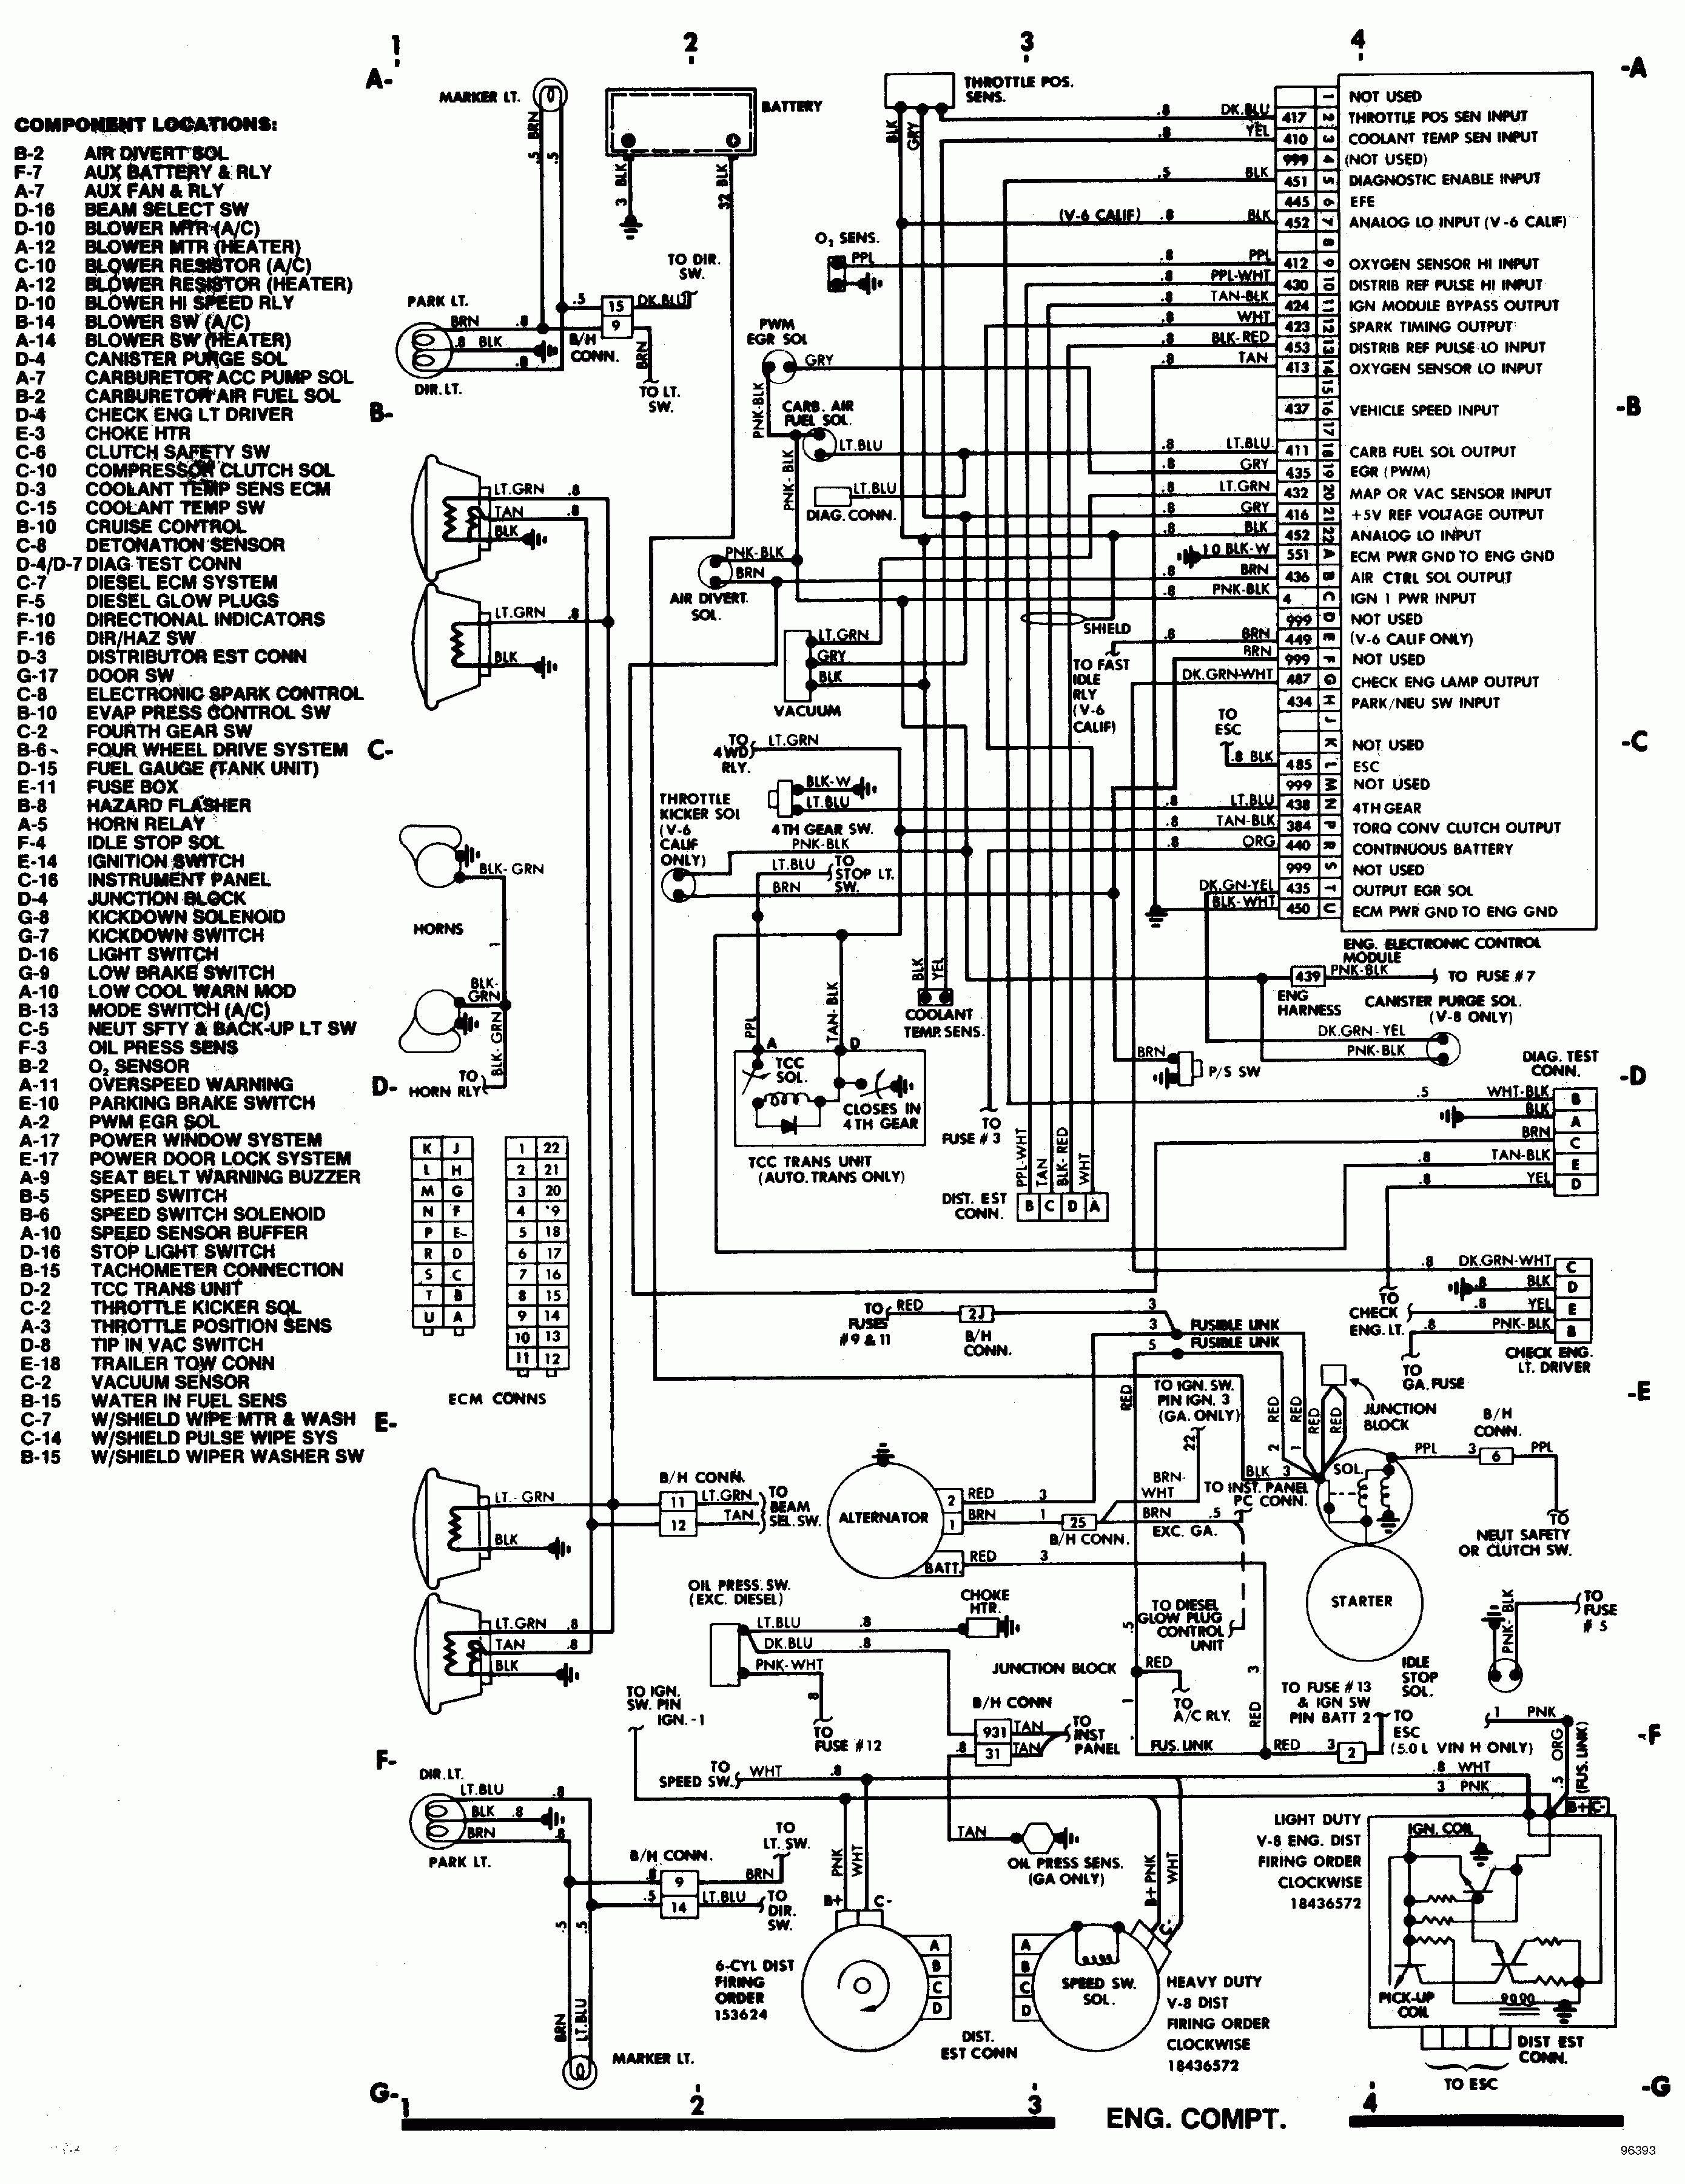 1978 Suburban Wiring Diagram | Schematic Diagram - 1978 Chevy Truck Wiring Diagram